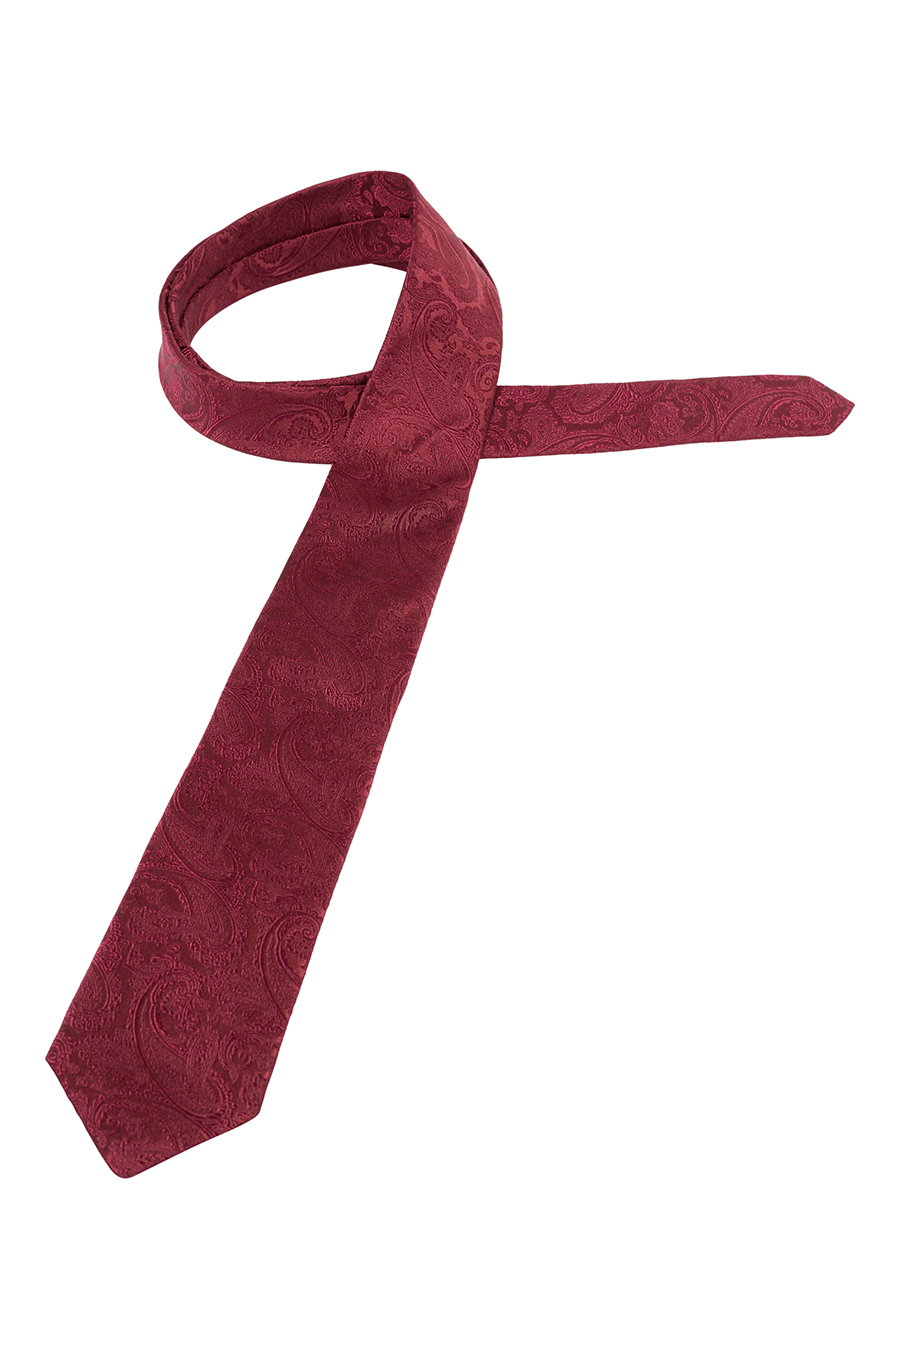 1863 reiner Krawatte dunkelrot cm breit aus 7,5 Seide ETERNA